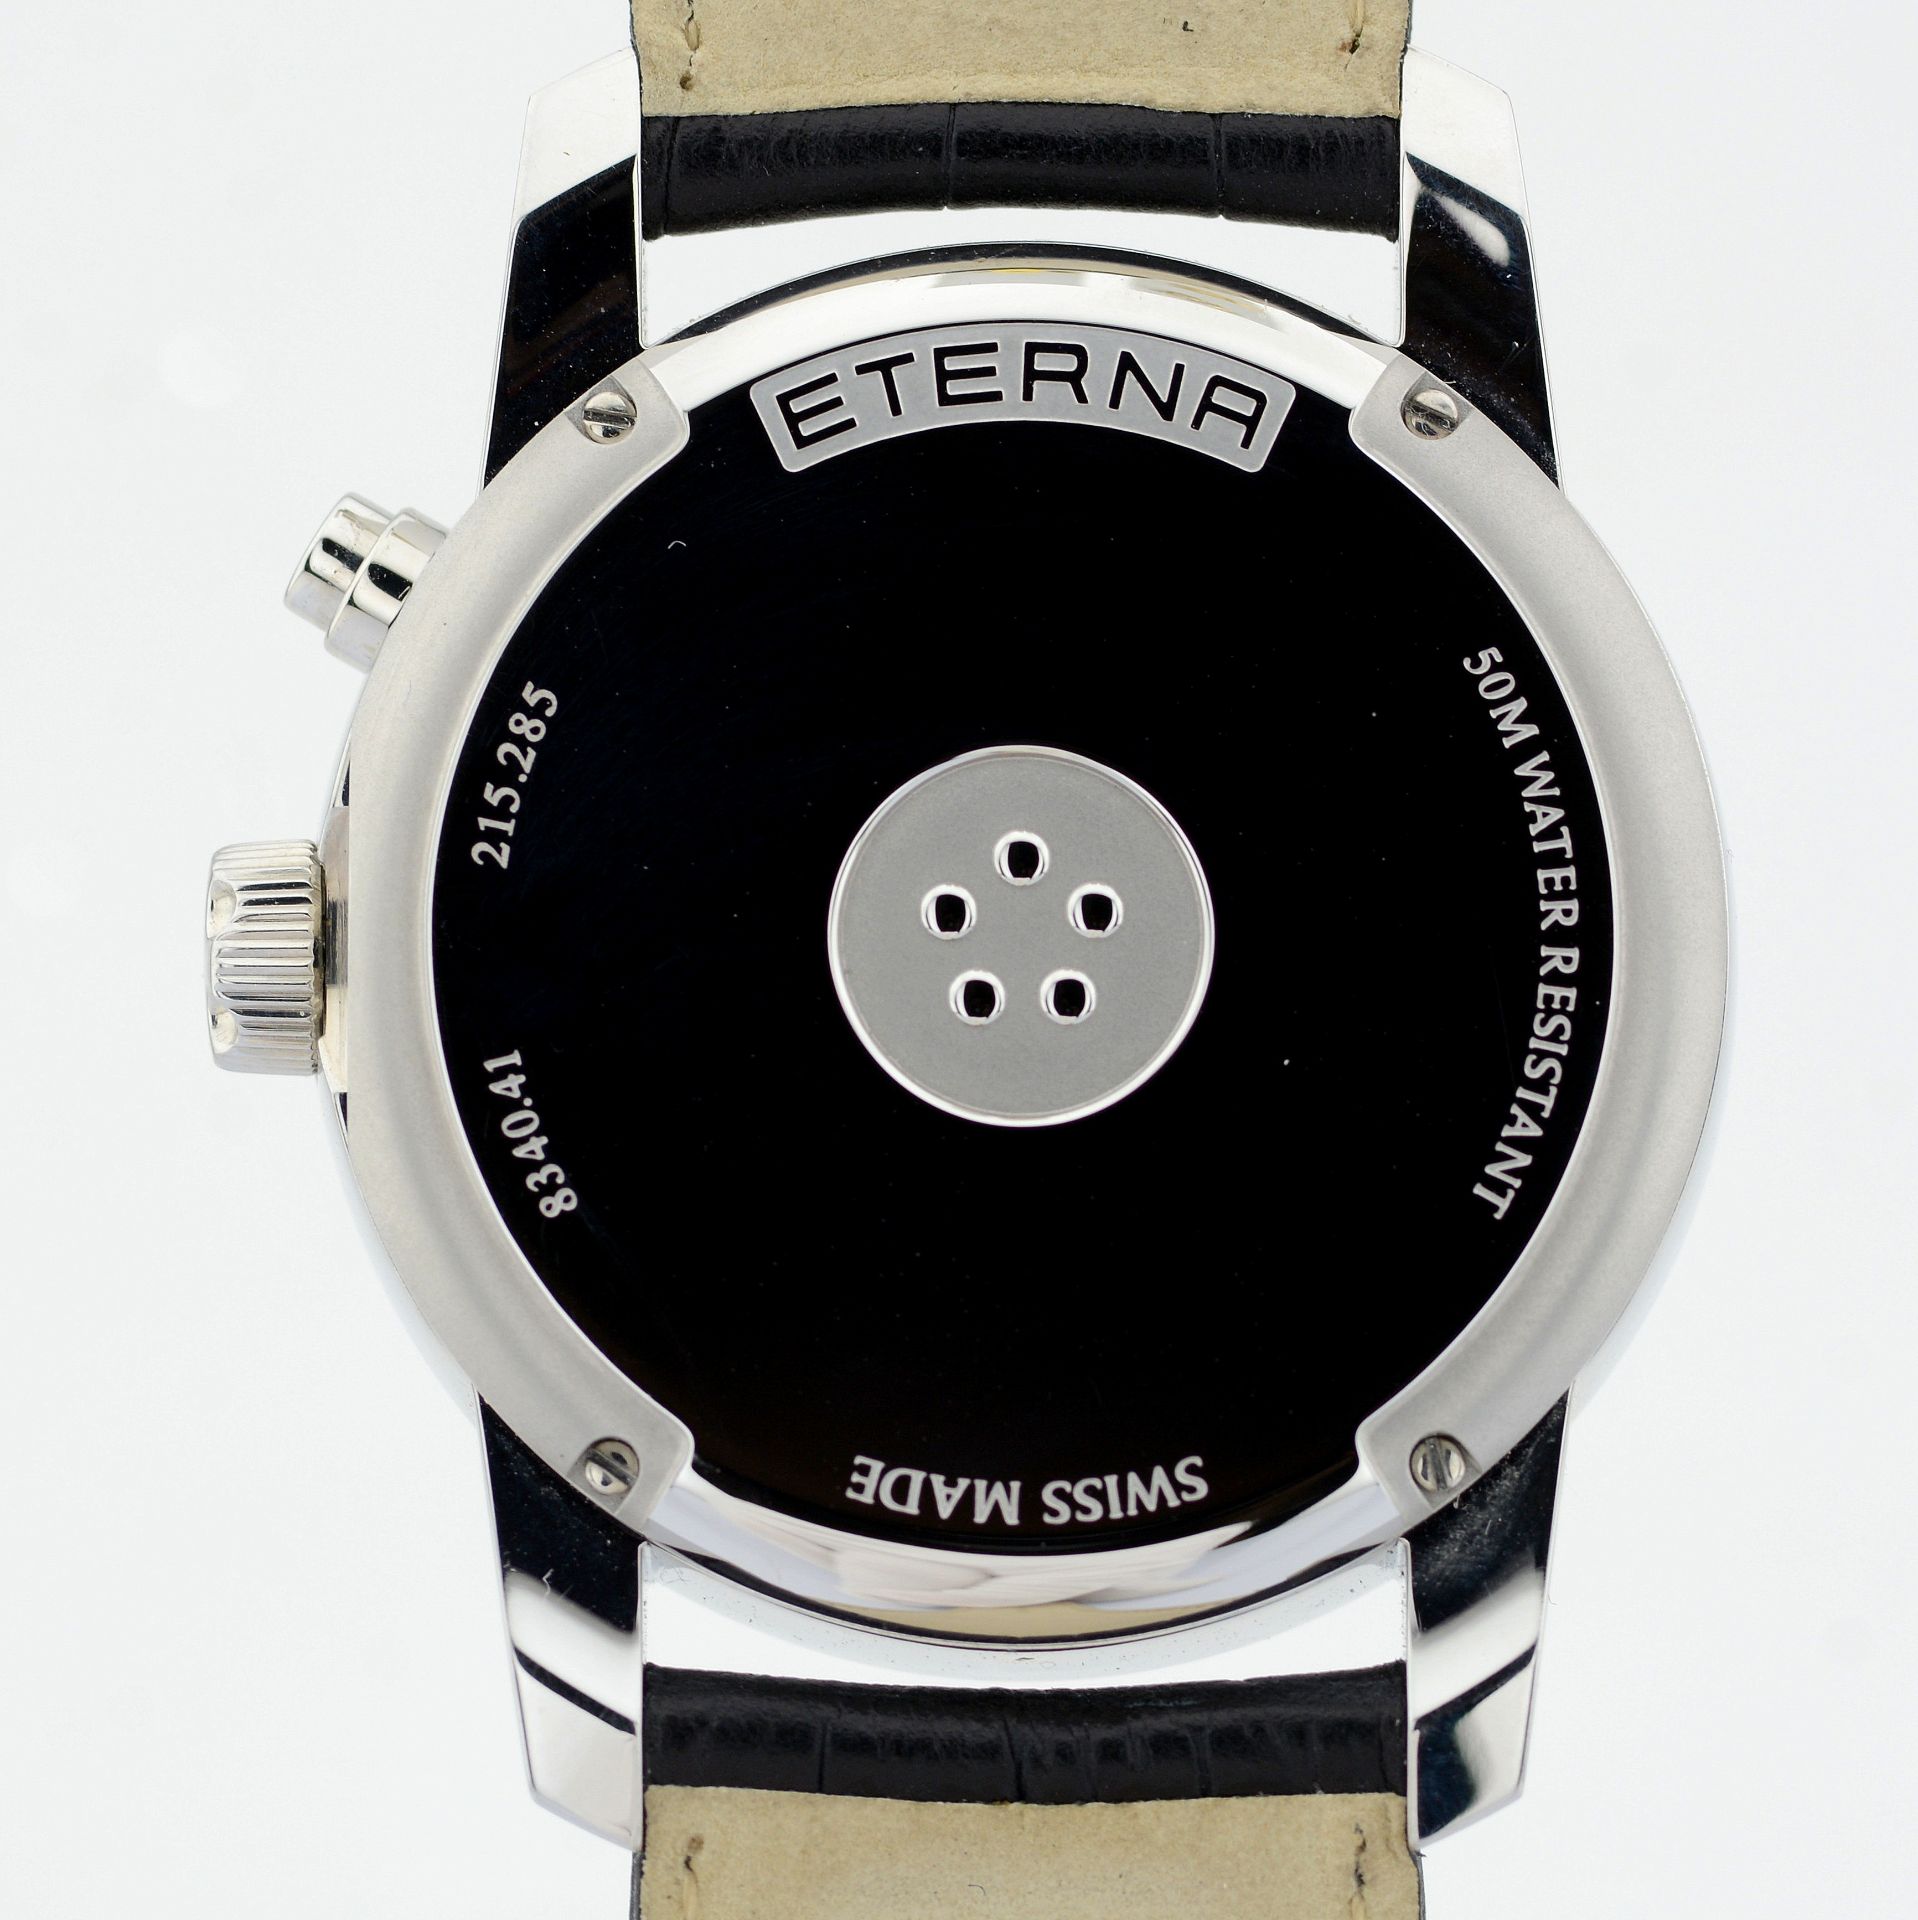 Eterna / Soleure Triple Date Moonphase - Gentlmen's Steel Wrist Watch - Image 5 of 12